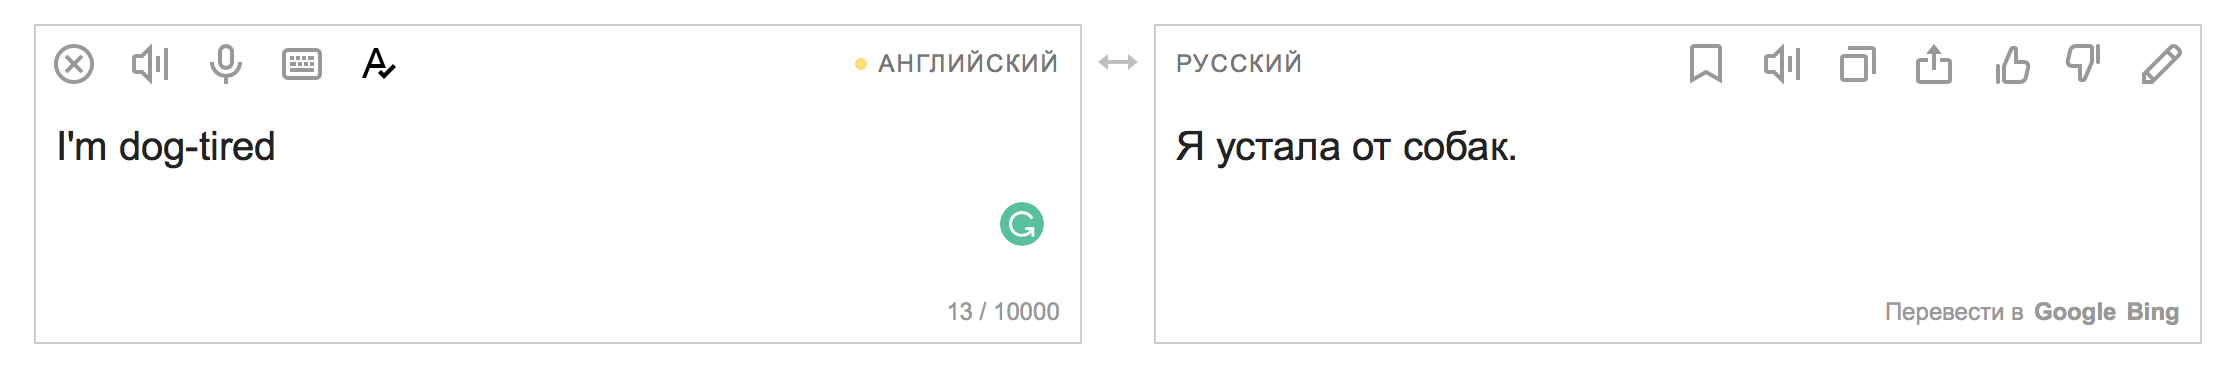 Не Лев Толстой, а толстый лев: 7 очень смешных переводов от Google Translate